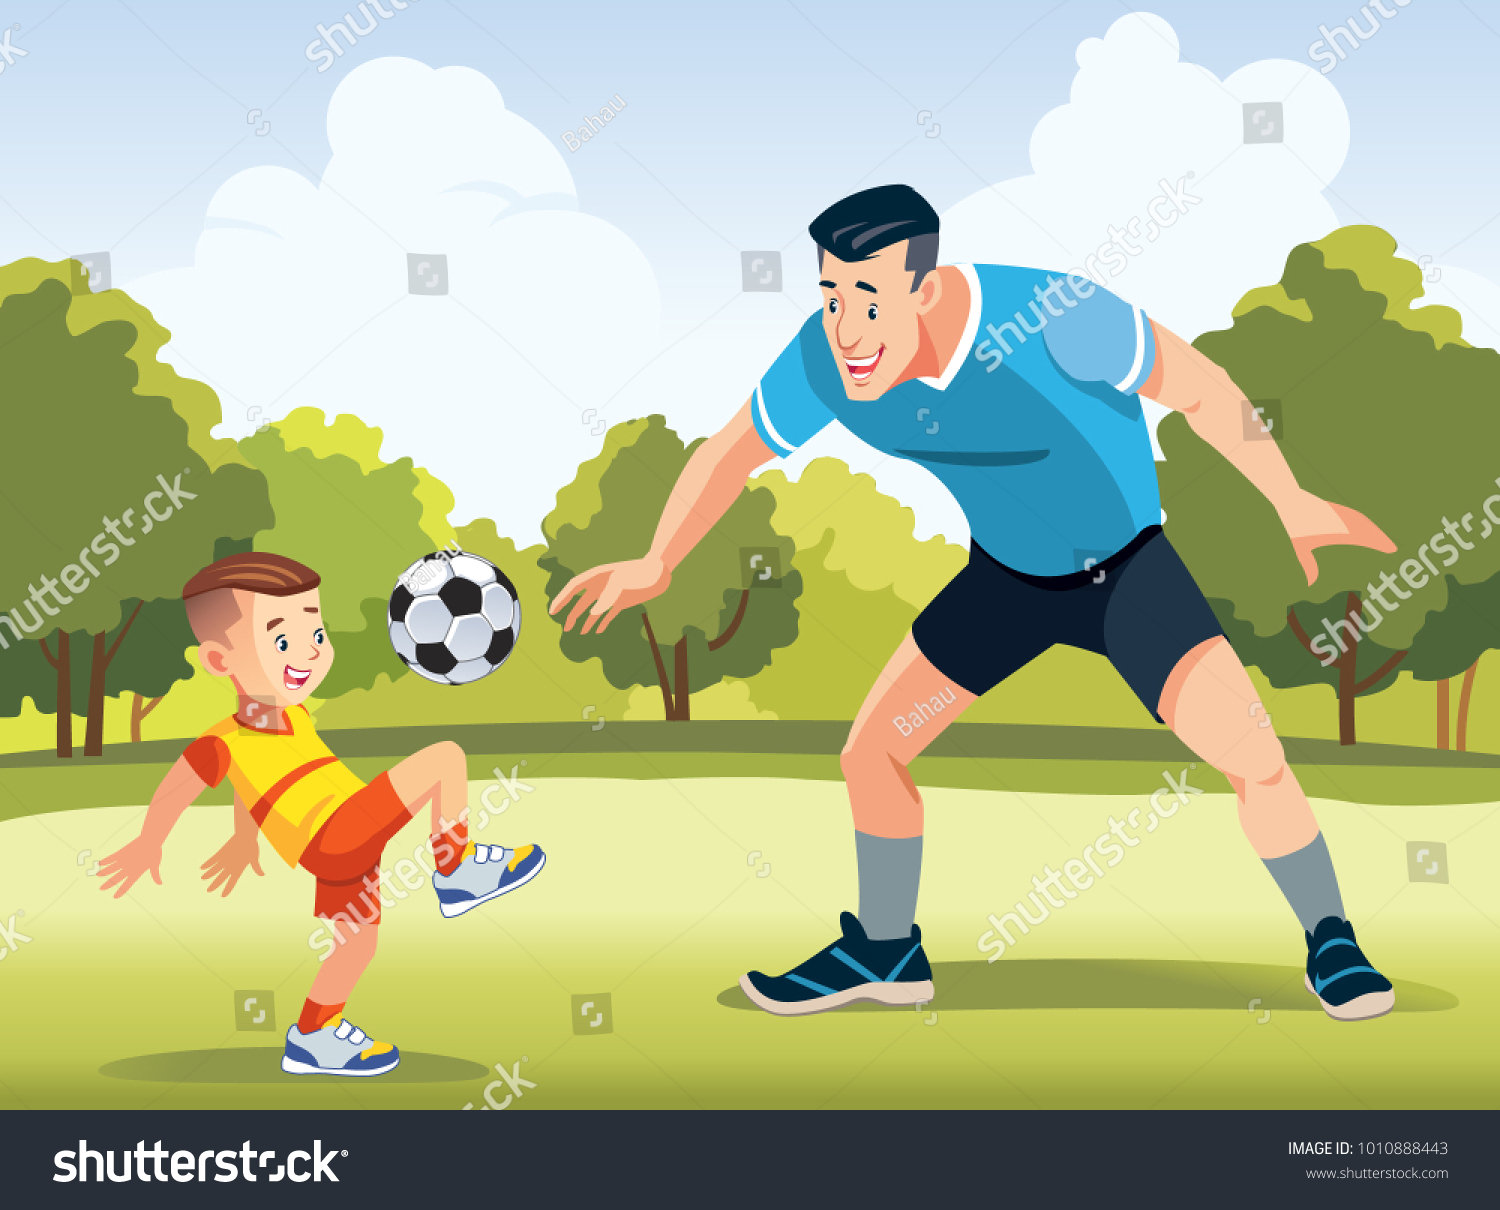 Папы играют в футбол. Футбол рисунок для детей. Играет в фуктболрисунок. Отец и сын играют в футбол рисунок. Игра в футбол с папой картинки.